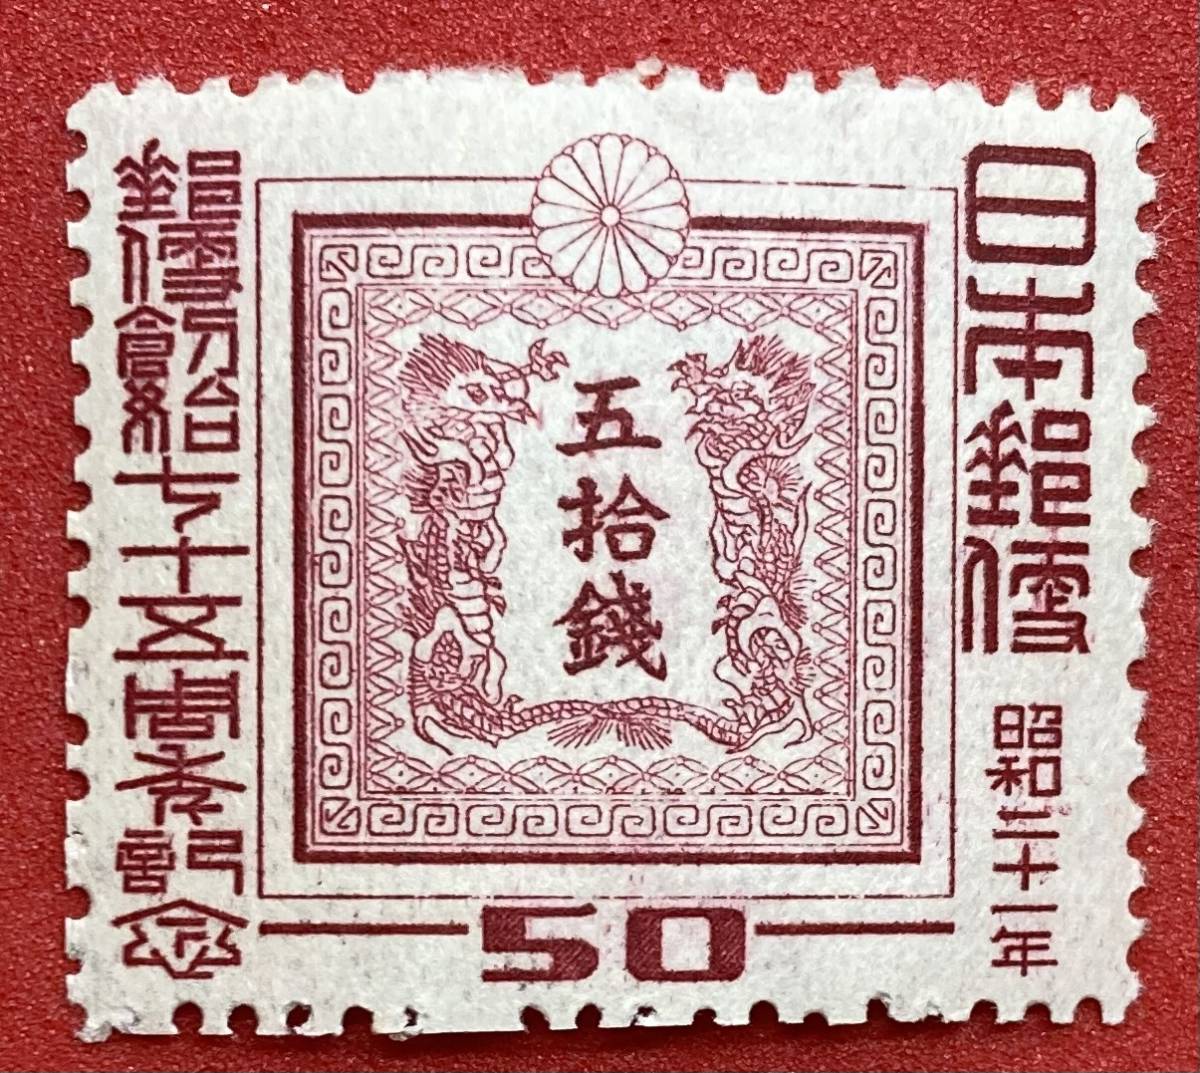 専用郵便創始50年切手6215 使用済切手/官製はがき 一 番 安い 商品 